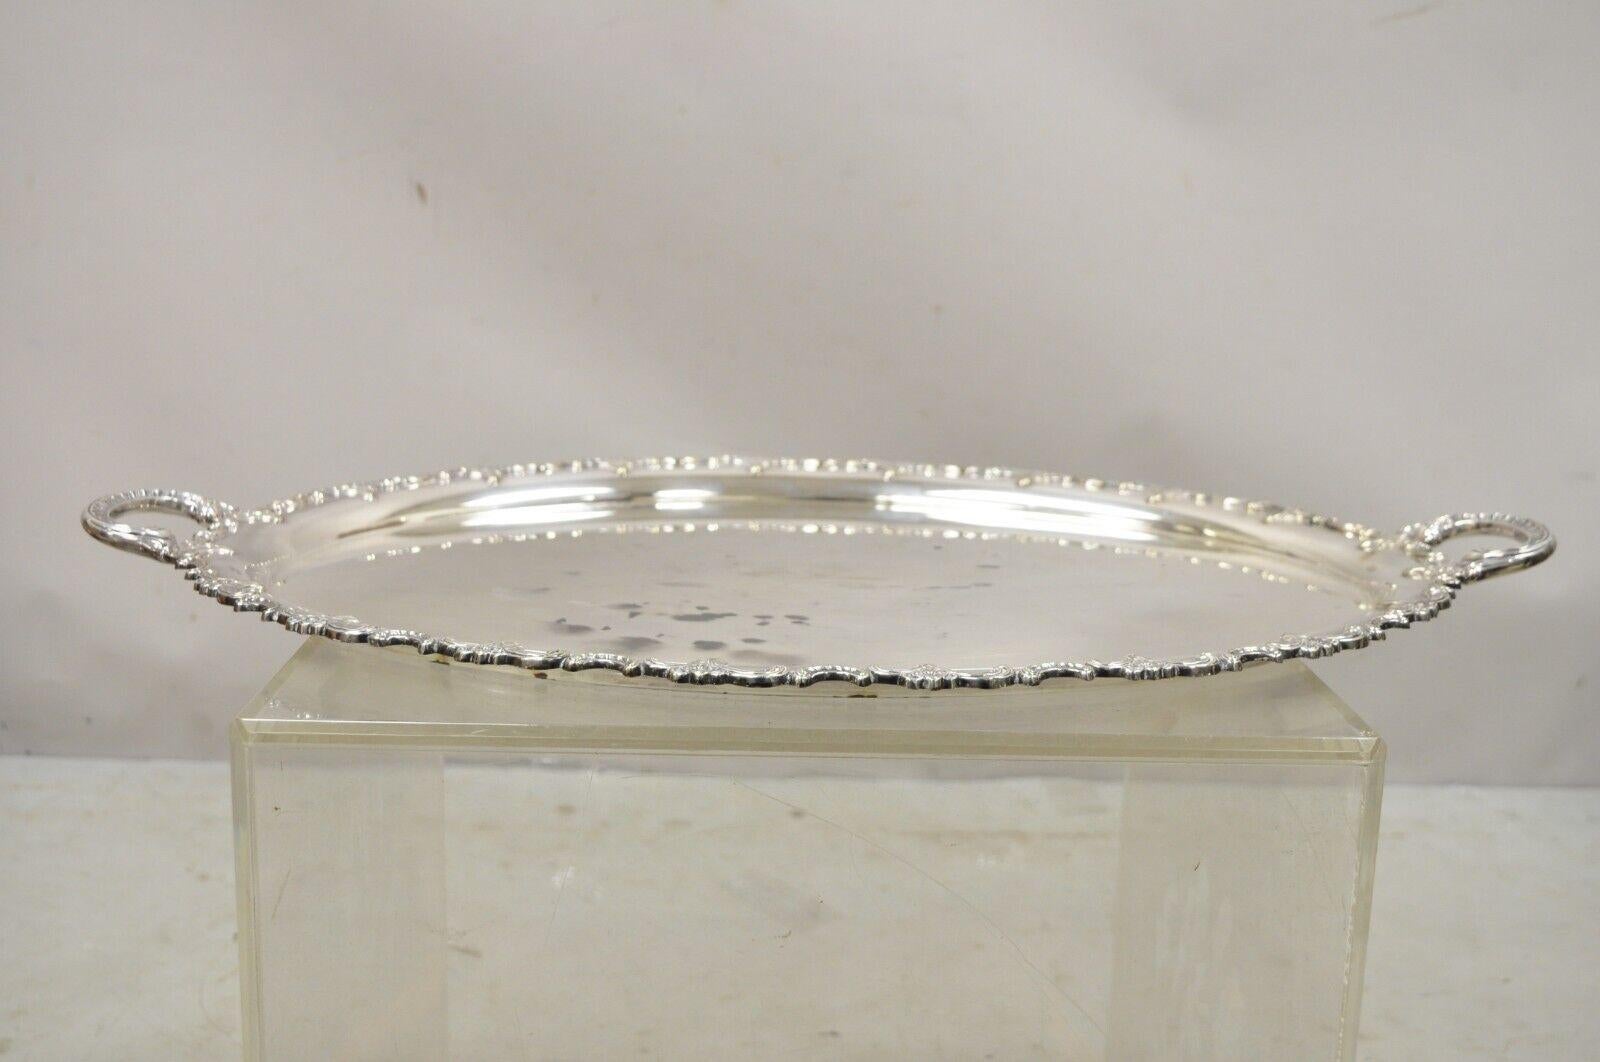 Vintage Handarbelt Alpacca Silver Plate Oval Tray Serving Platter. L'objet présente deux poignées ornées, un bord décoré, une forme ovale, un cachet d'origine, un très bel objet vintage. Circa Age : Début du 20ème siècle. Dimensions : 1,5